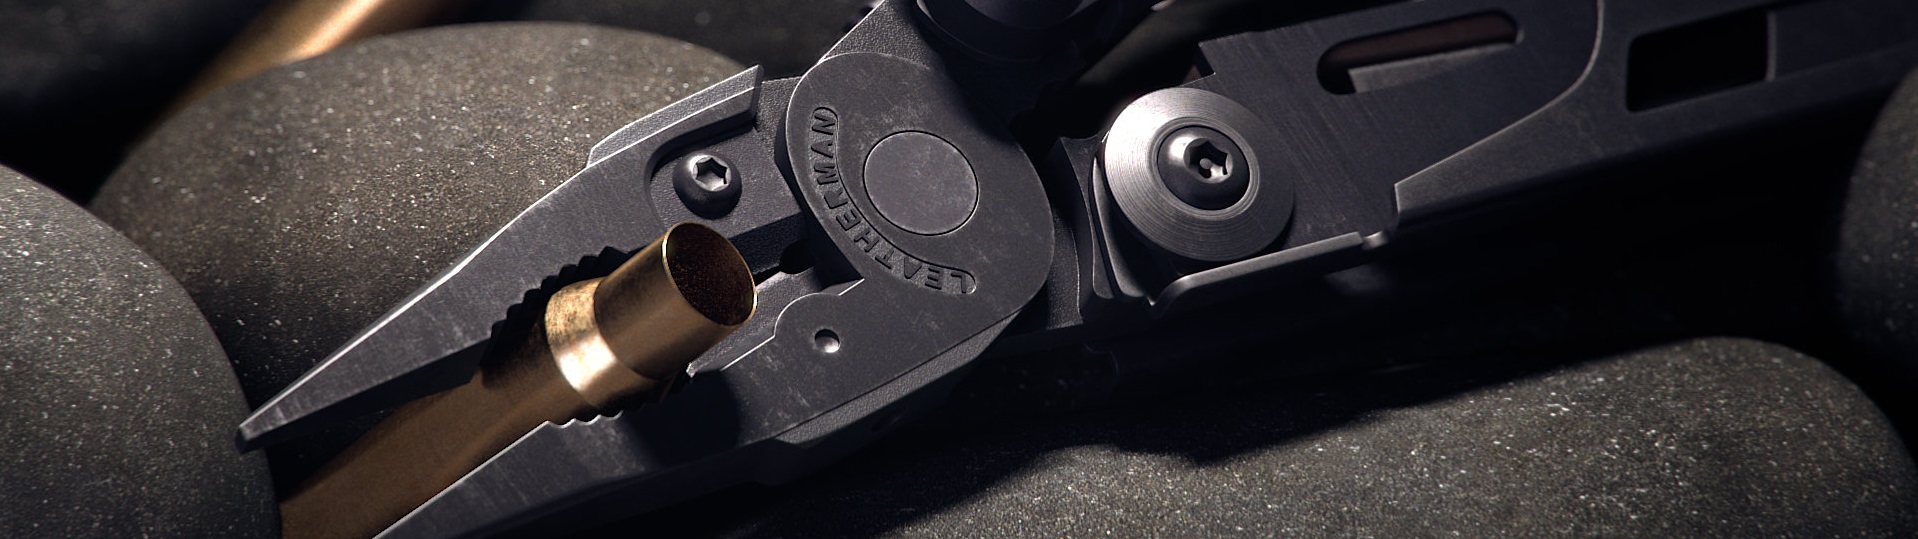 Військовий мультитул Leatherman MUT Black зі знімними компонентами для швидкого та легкого налаштування інструментів для роботи зі зброєю